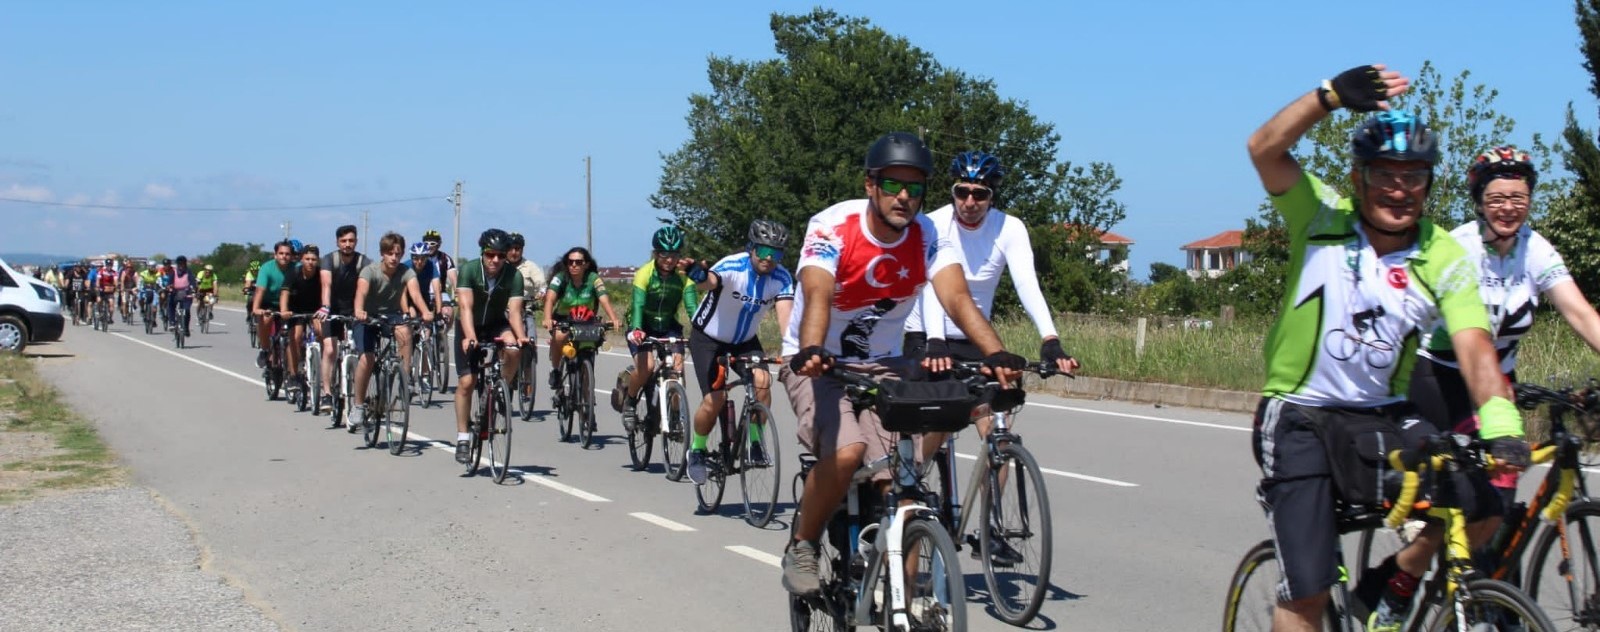 Bisiklet şehrinde demokrasi, sağlık ve doğa için pedal çevirdiler